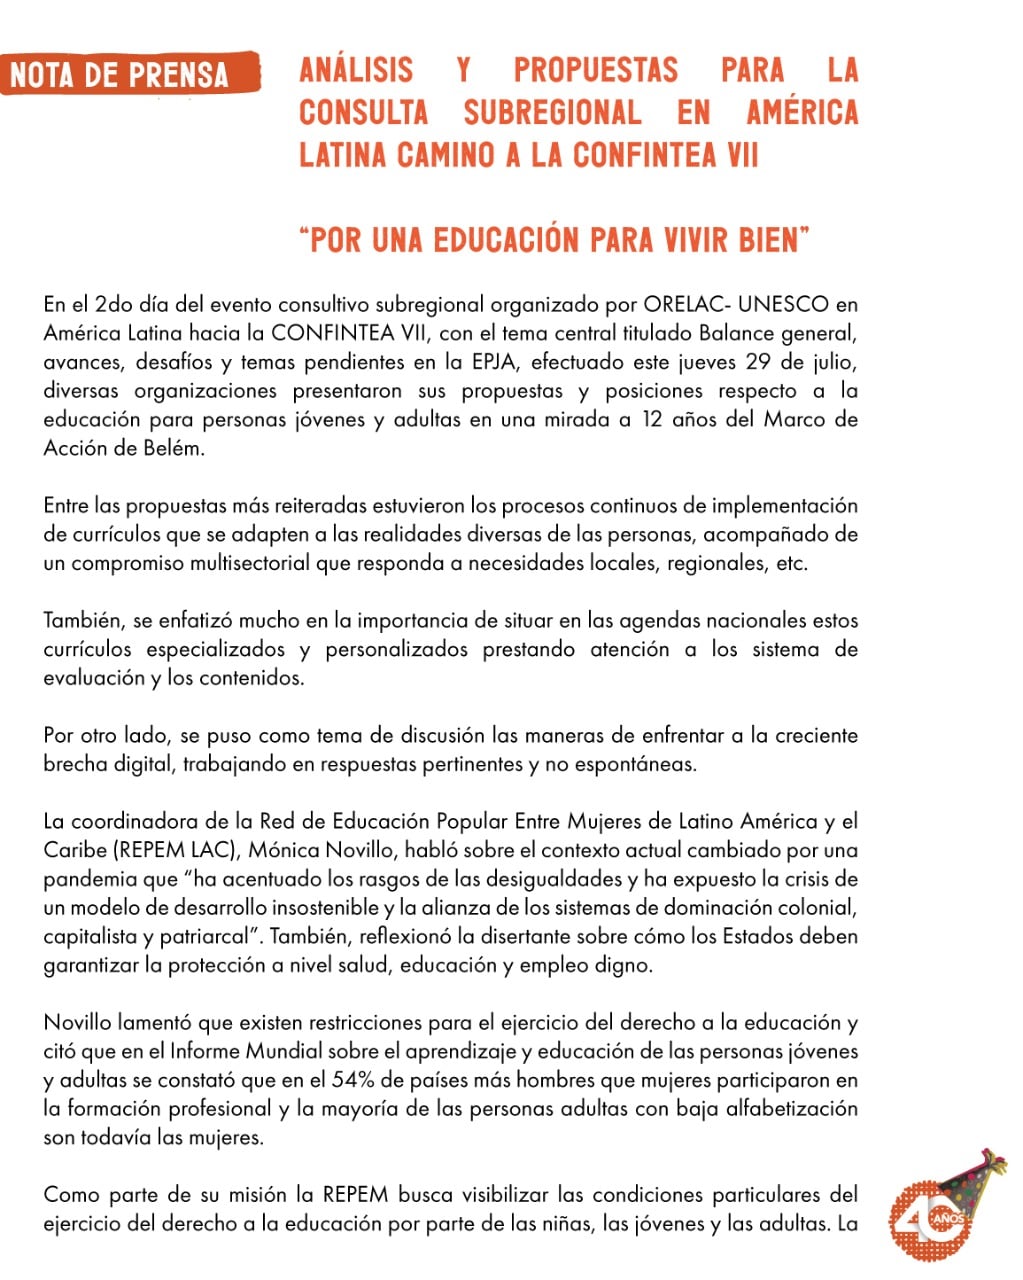 Nota de prensa producida sobre el evento consultivo subregional organizado por ORELAC-UNESCO en América Latina hacia la Confintea VII